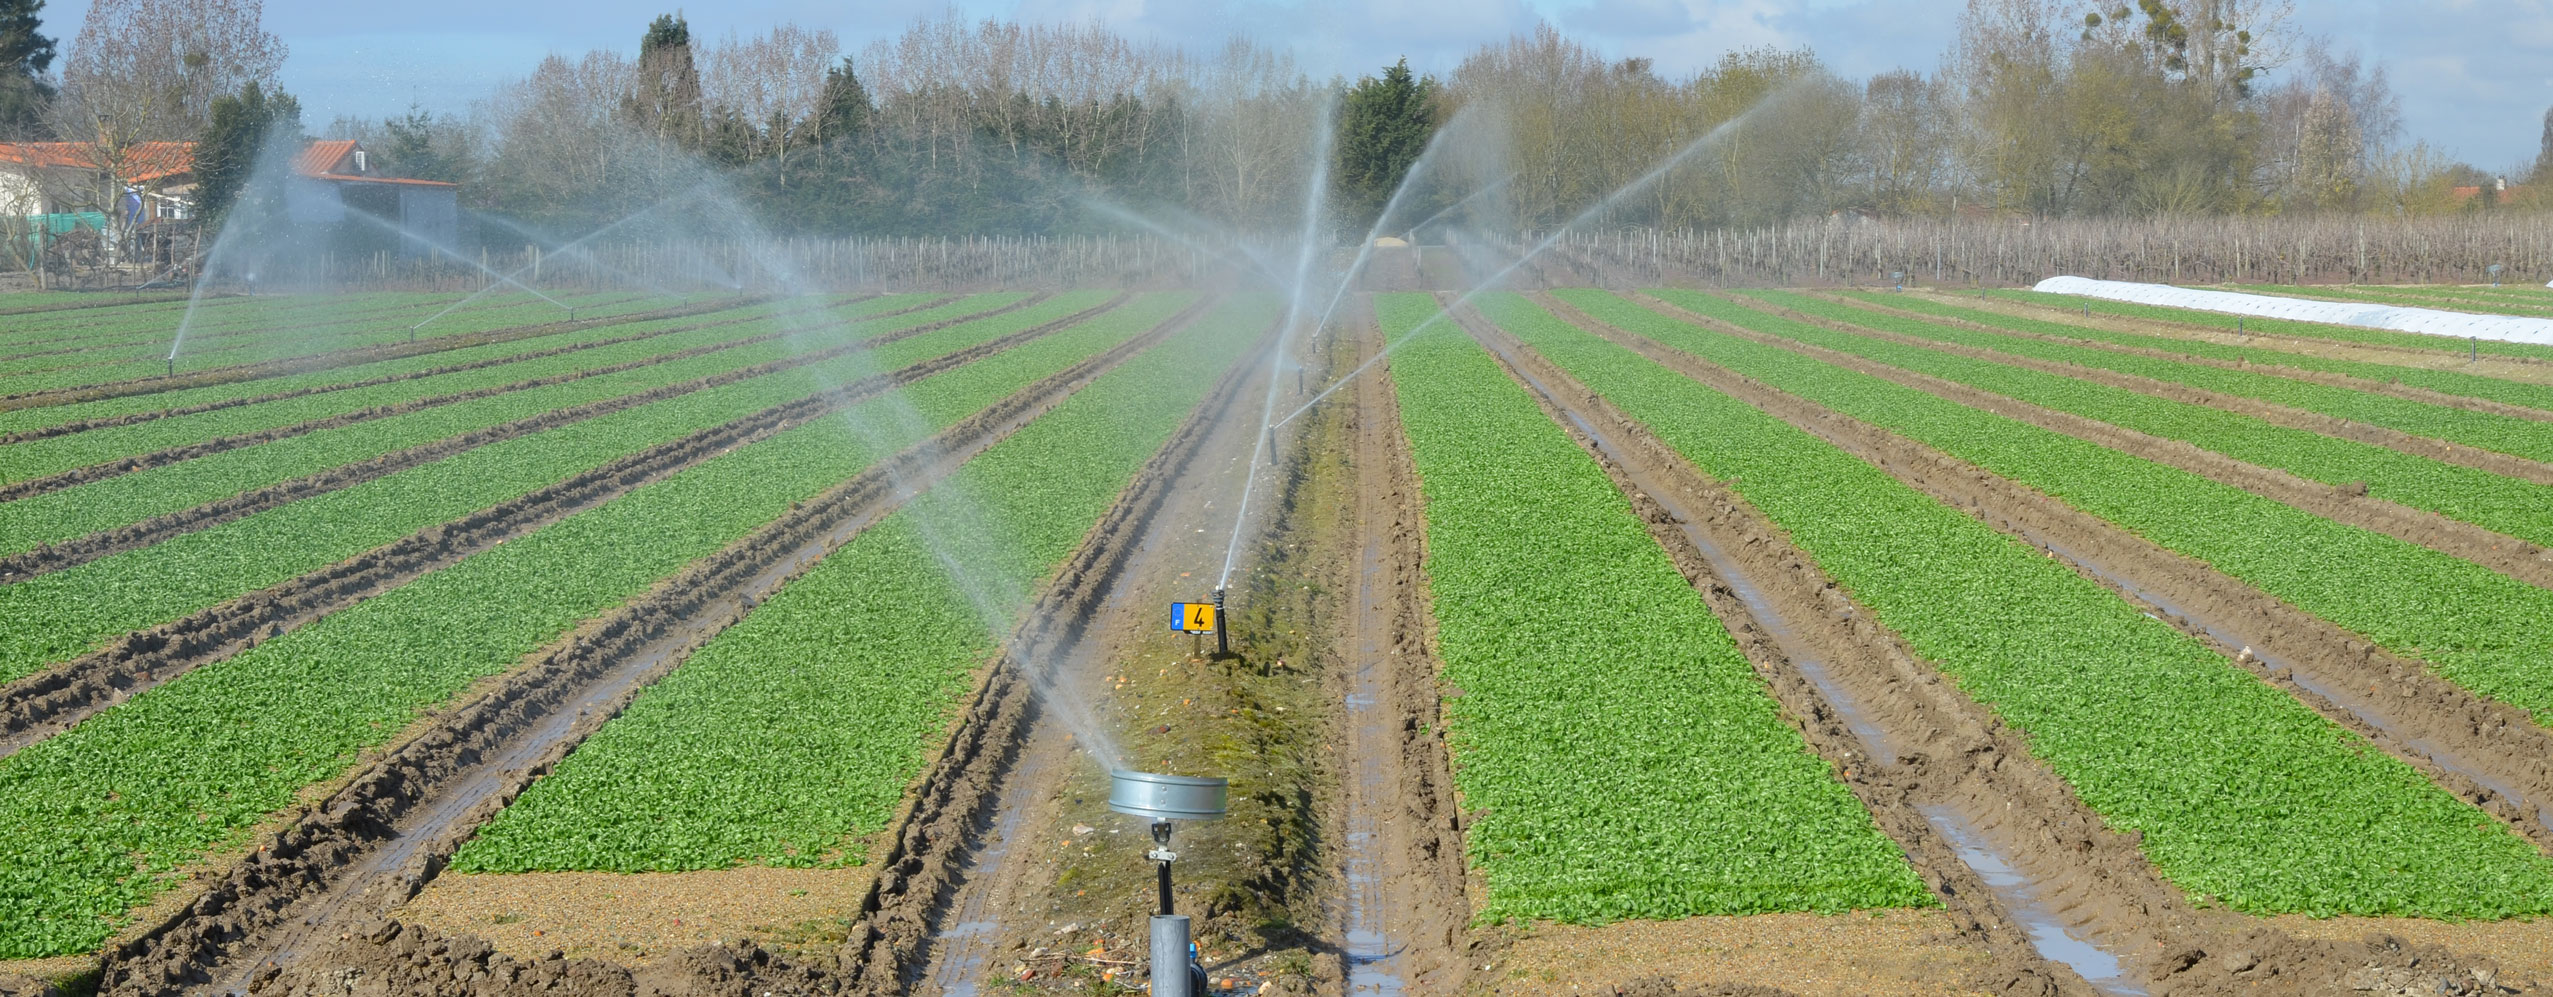 Plasticulture l'irrigation de la mâche dans la vallée des maraichers nantais 